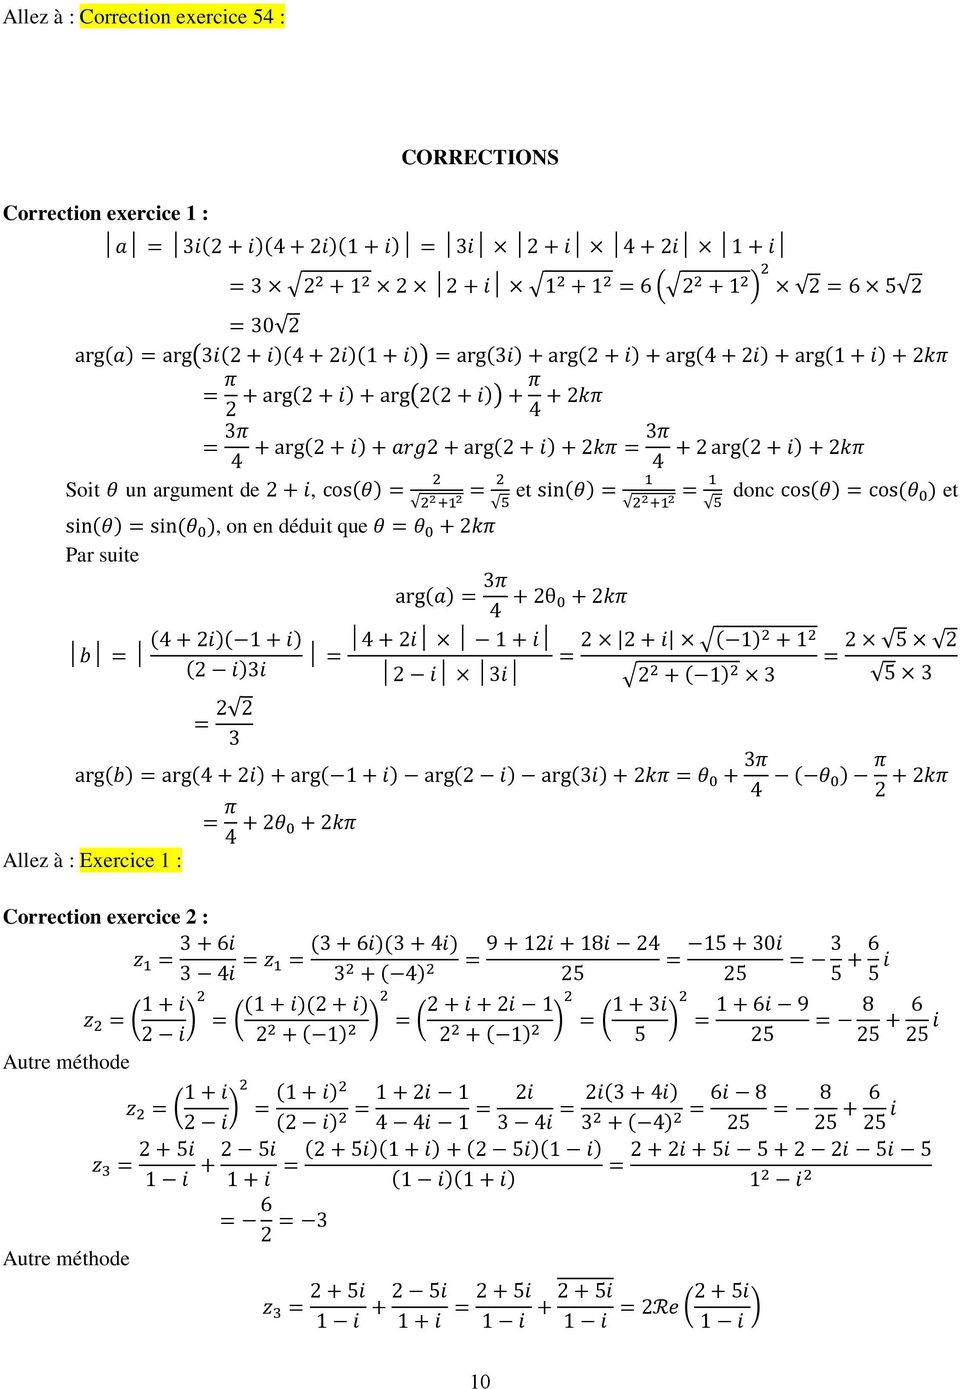 arg(a) π + θ 0 + kπ ( )( 1 ) 1 ( 1) + 1 5 ( )i i + ( 1) 5 arg(b) arg( ) + arg( 1 ) arg( ) arg(i) + kπ θ 0 + π ( θ 0 ) π + kπ Allez à : Exercice 1 : π + θ 0 + kπ Correction exercice : z ( 1 ) Autre